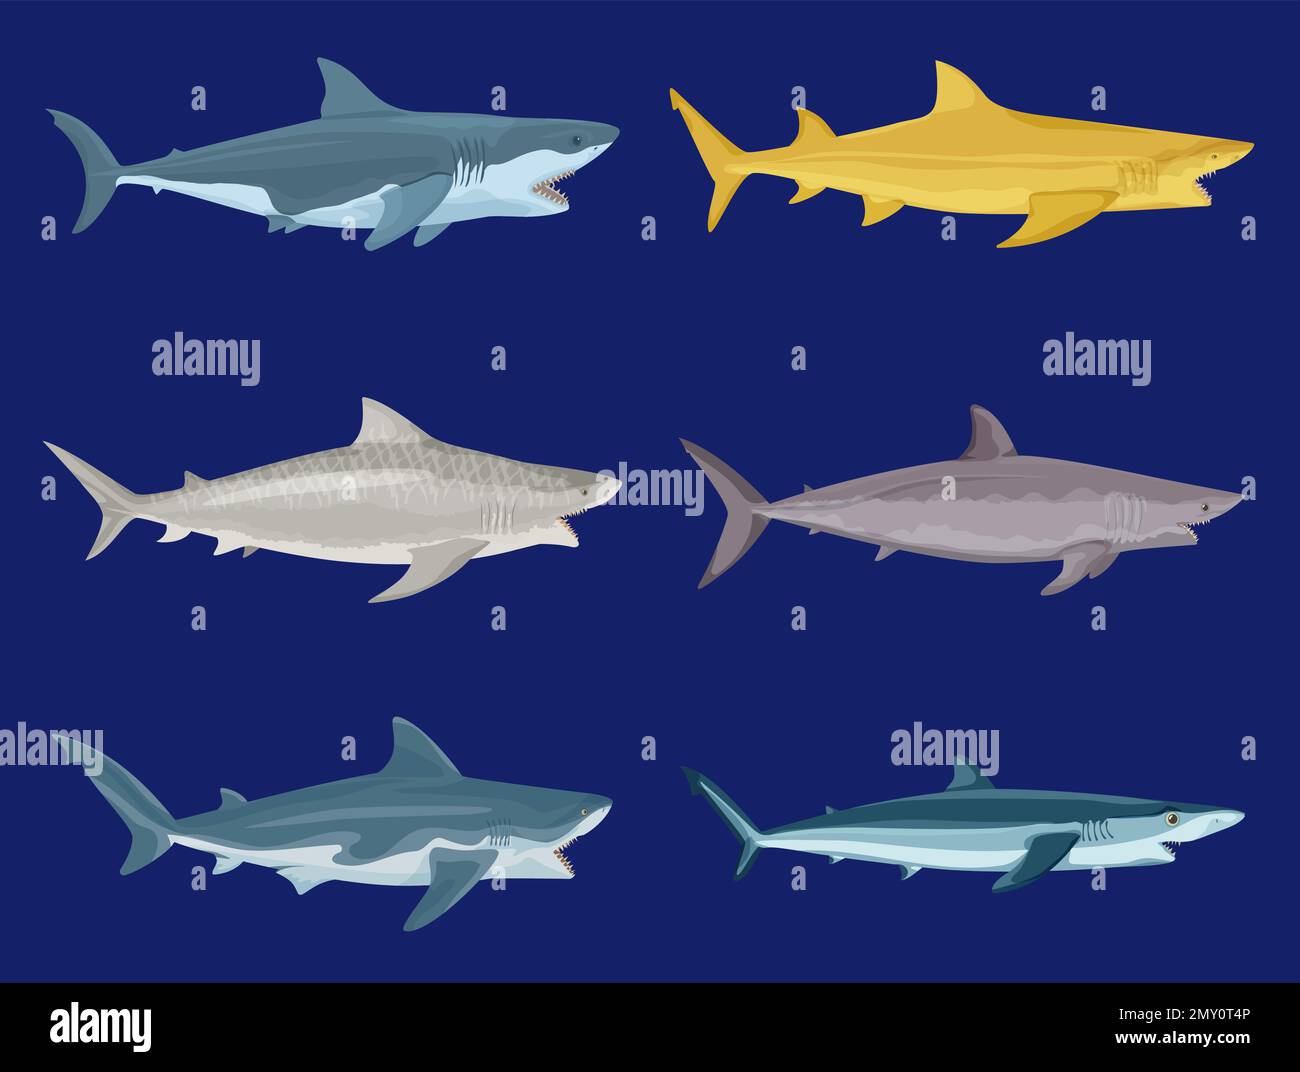 Attaquez les requins à plat avec des images isolées de poissons prédateurs de couleur sur fond bleu illustration vectorielle Illustration de Vecteur